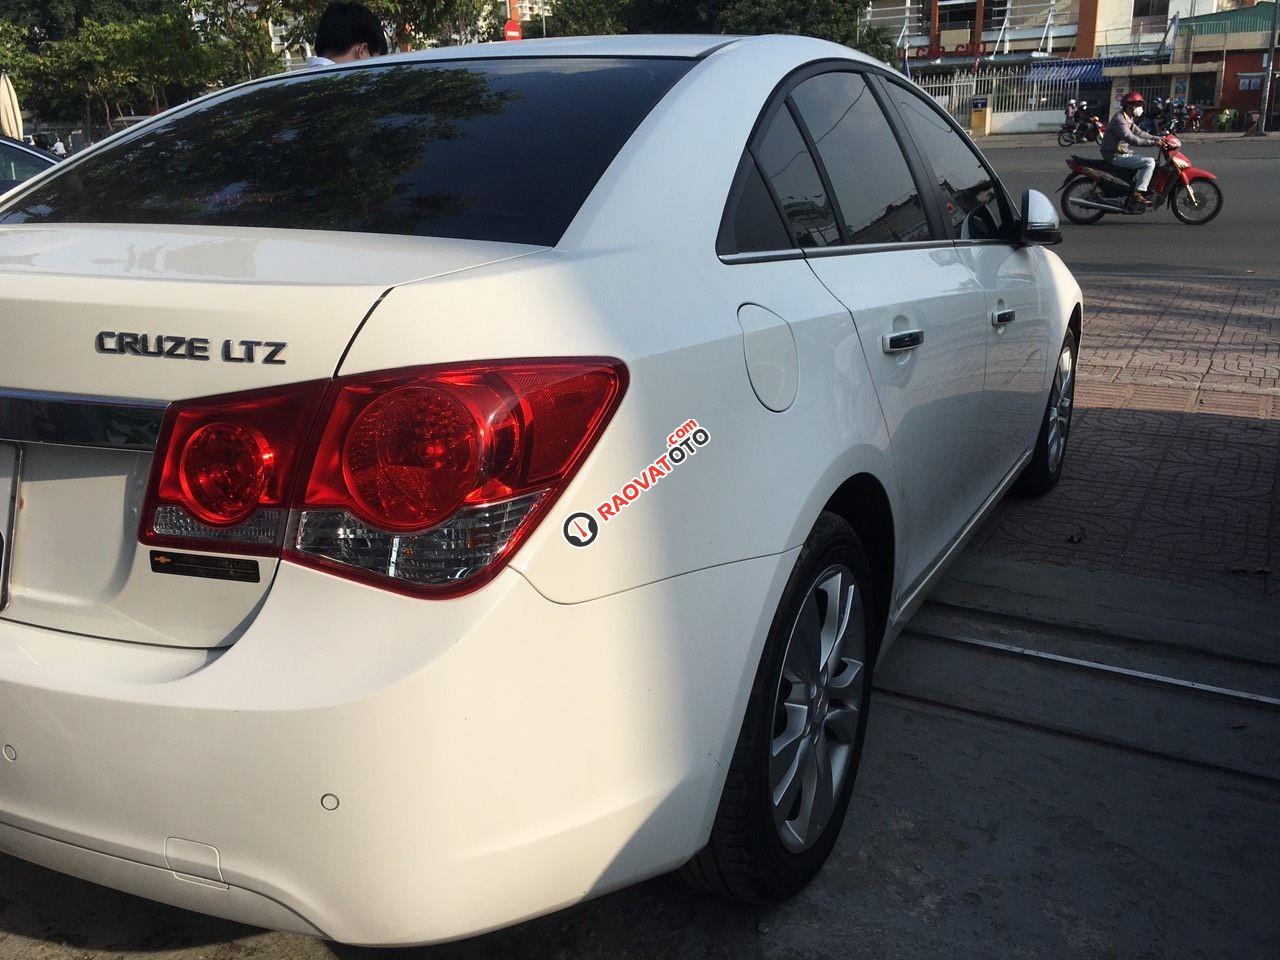 Bán xe Chevrolet Cruze LTZ 2015 trắng, odo 8300km, như mới, 390 triệu-4